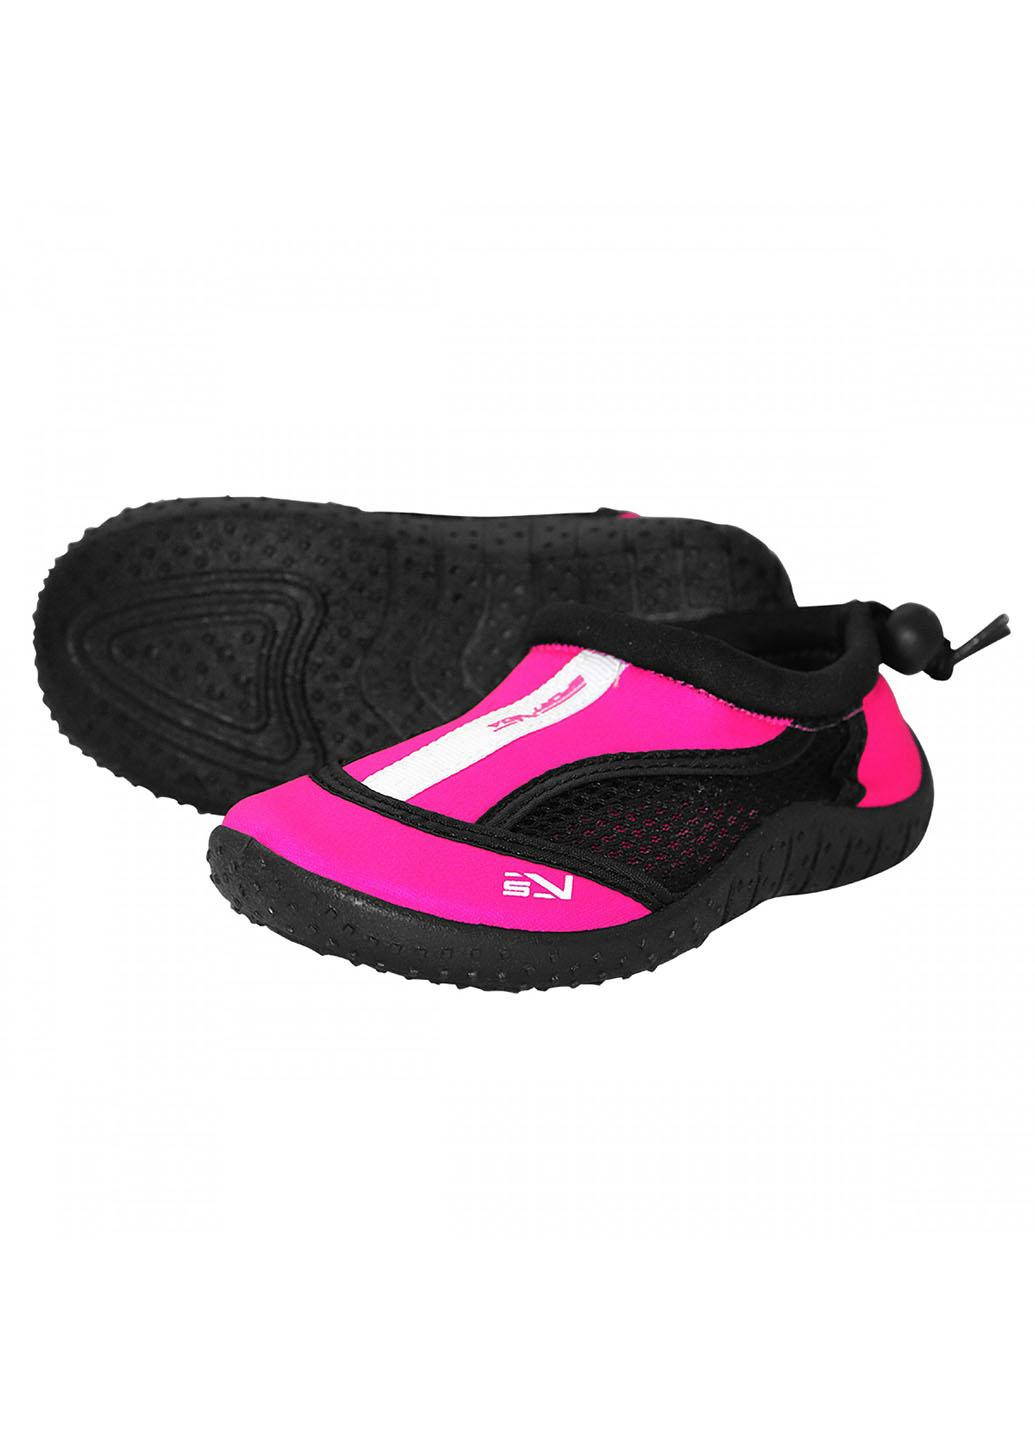 Обувь для пляжа и кораллов (аквашуз) SV-GY0001-R28 Size 28 Black/Pink SportVida (258486776)